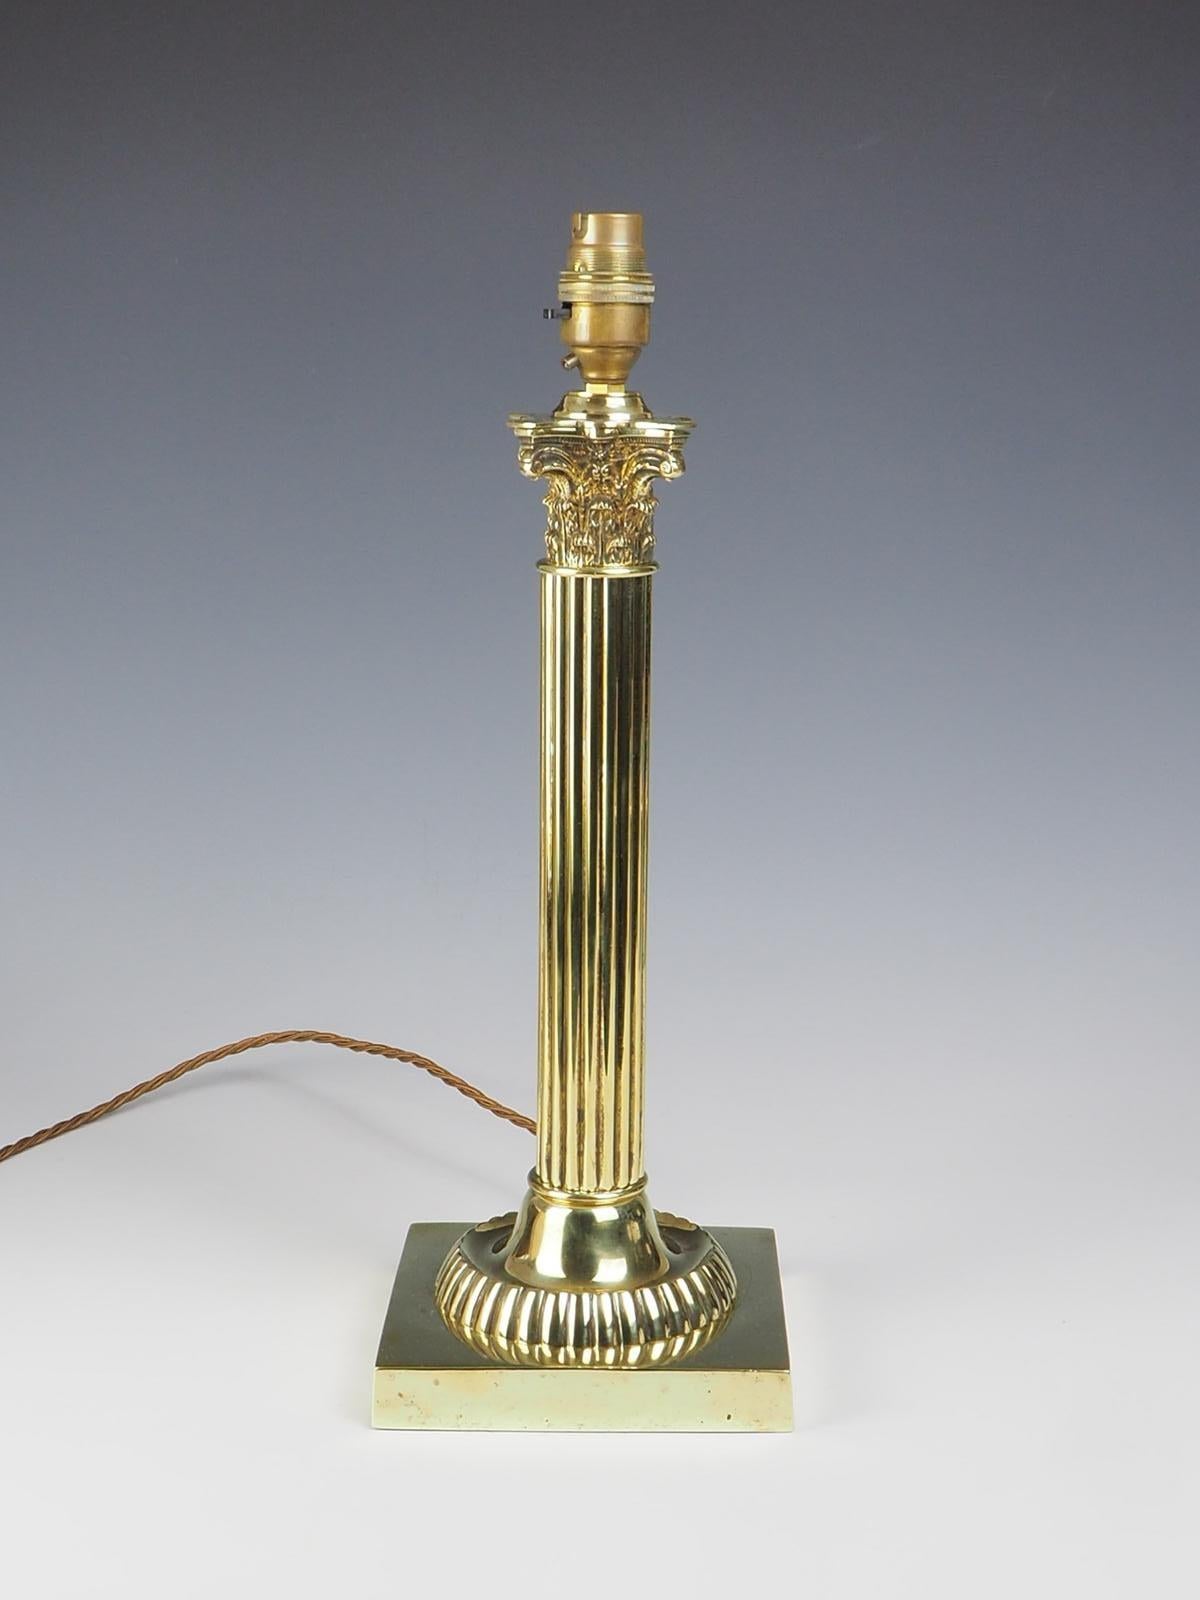 Korinthische Tischlampe aus Messing aus dem 19. Jahrhundert, ein wahrhaft exquisites Stück, das Eleganz und Raffinesse mühelos vereint.

Diese Lampe verfügt über einen atemberaubenden Muschelsockel, der sorgfältig bis zur Perfektion gearbeitet ist.